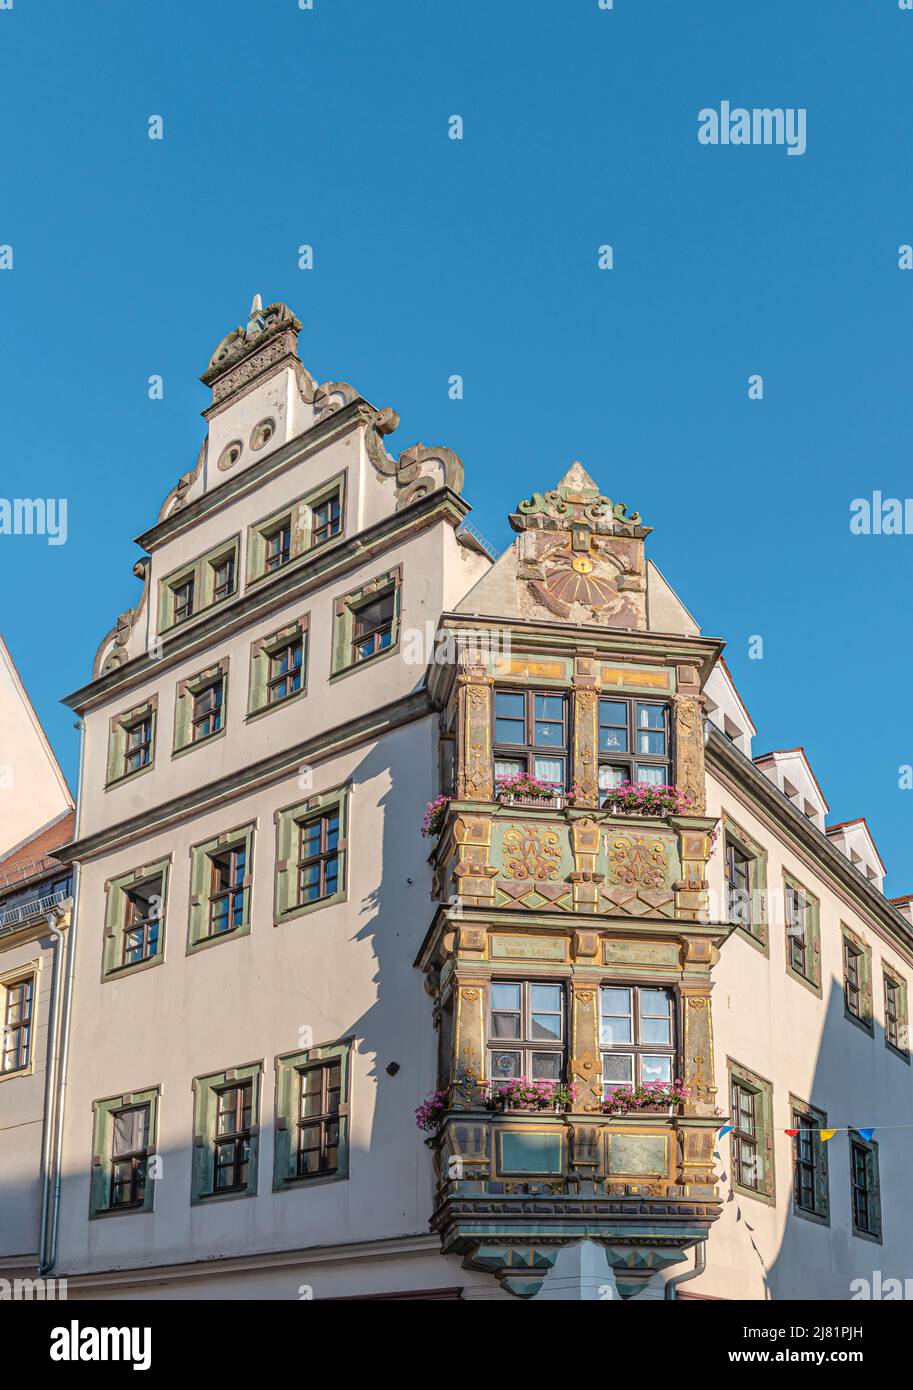 El Schöne-Erker-Haus fue construido en 1616 en el casco antiguo histórico de Freiberg, Sajonia, Alemania Foto de stock